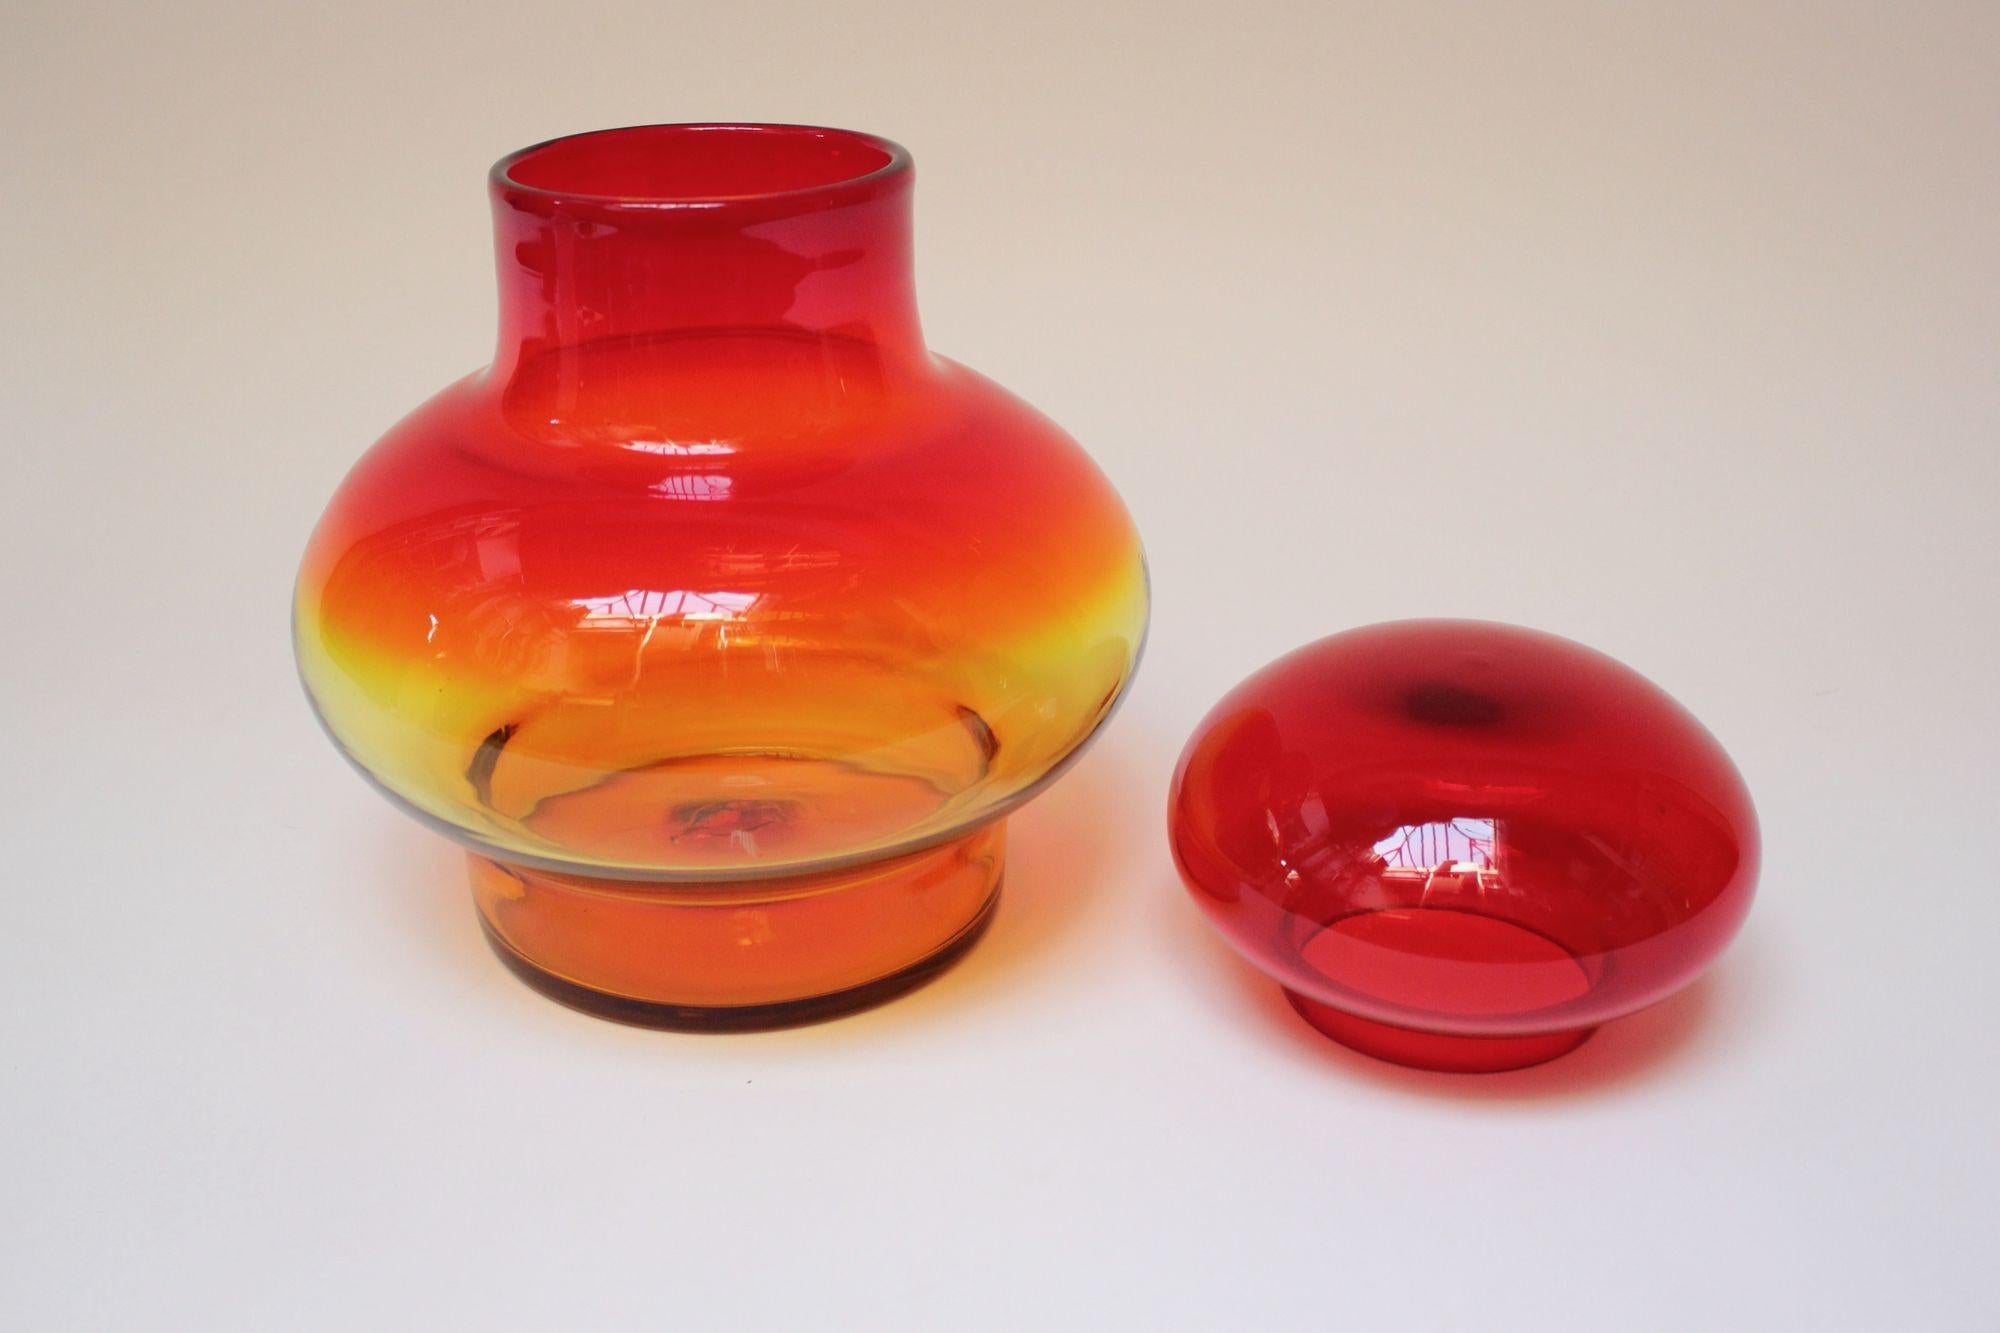 Großes mundgeblasenes Glas mit bernsteinfarbenem/tangerinenfarbenem Deckel, entworfen von John Nickerson für Blenko (Modellnummer 7328).
Dieses Modell erschien erstmals im Blenko-Katalog von 1973 und wurde nur zwei Jahre lang produziert. Seltenes